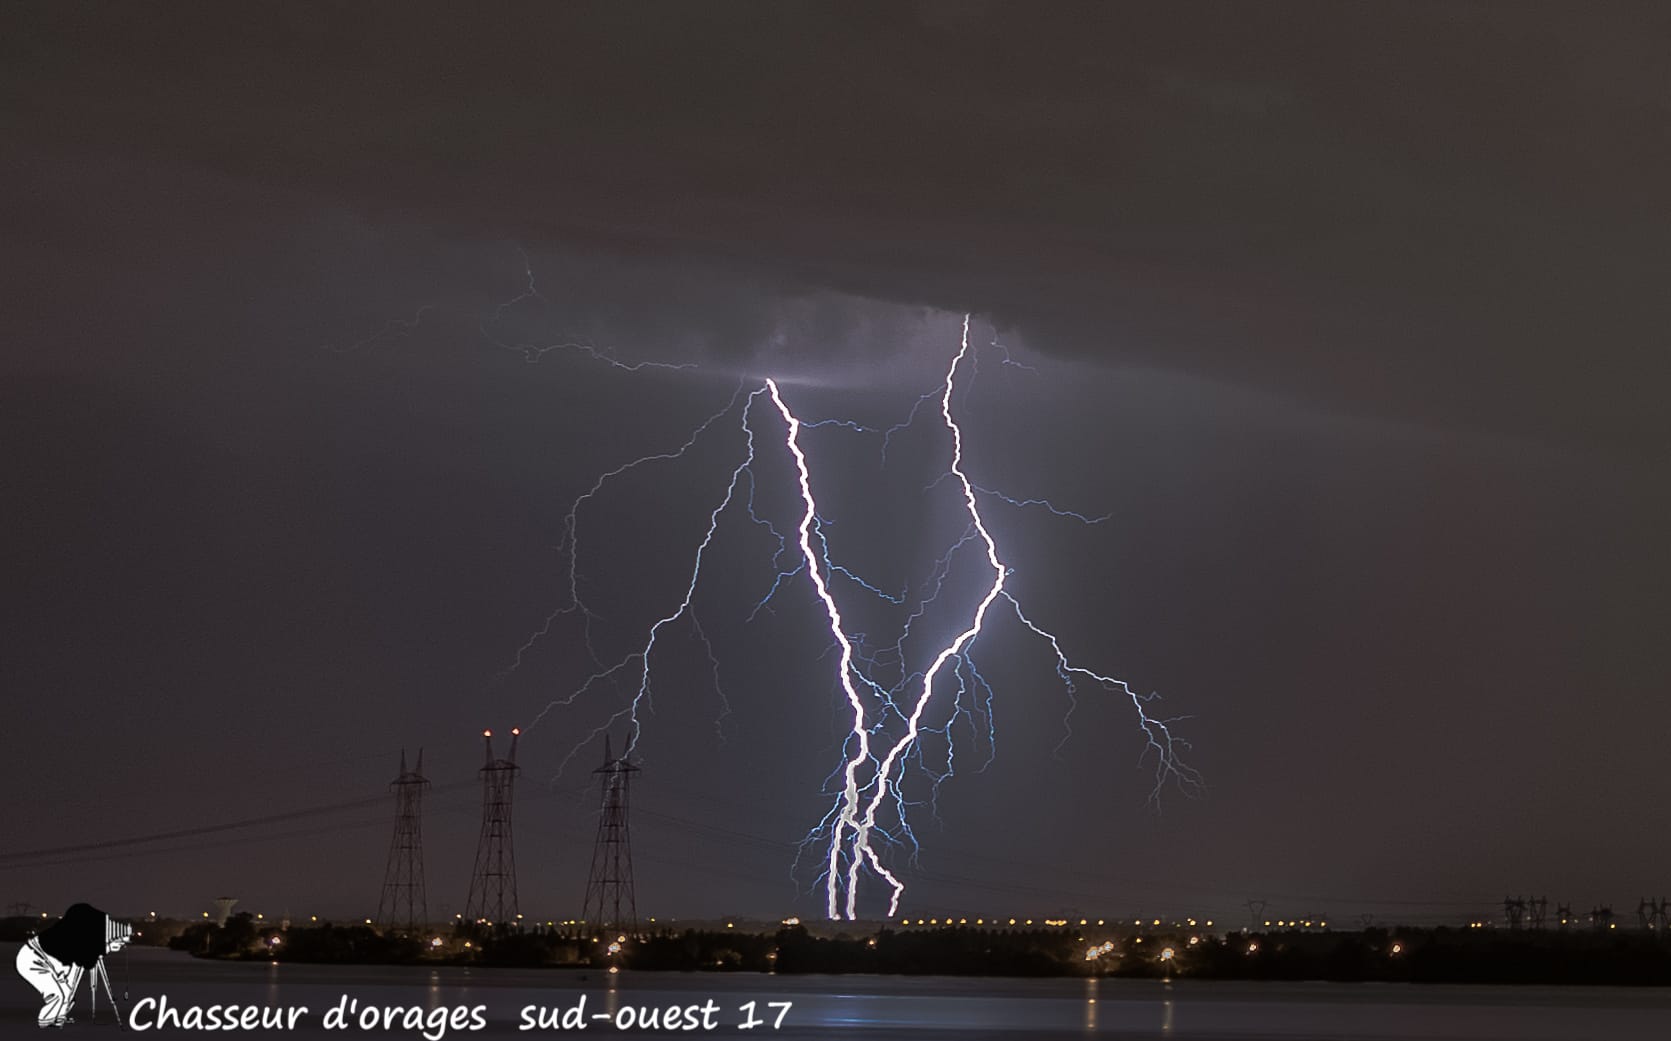 Une magnifique chasse très électriques hier soir sur Bourg sur Gironde - 14/08/2017 23:55 - sud-ouest chaseur d'orage